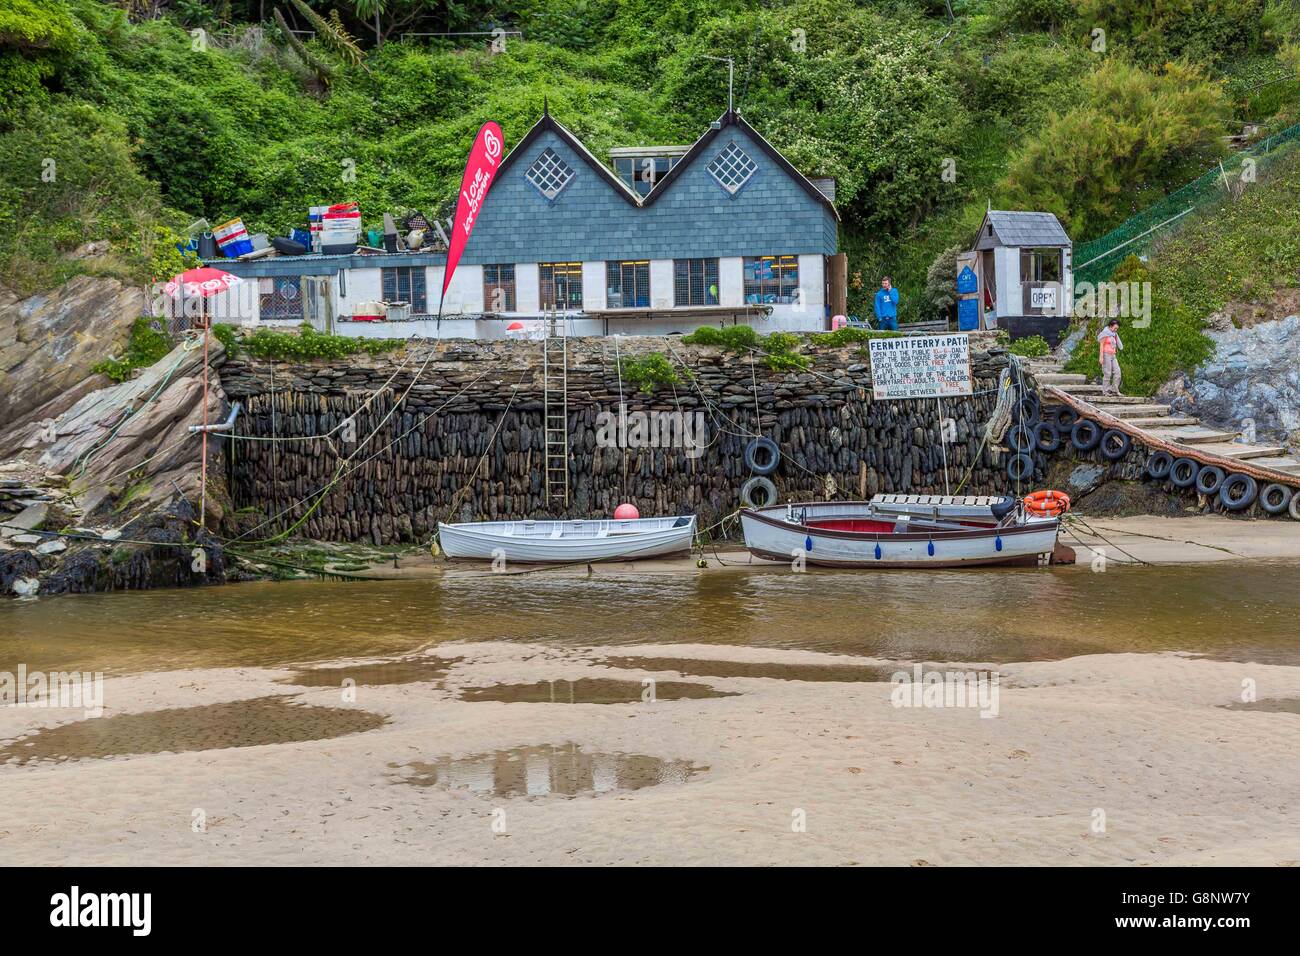 Une maison de bateau avec des bateaux sur le fleuve estuaire Gannel, plage de Crantock, près de Newquay en Cornouailles, Royaume-Uni. Banque D'Images